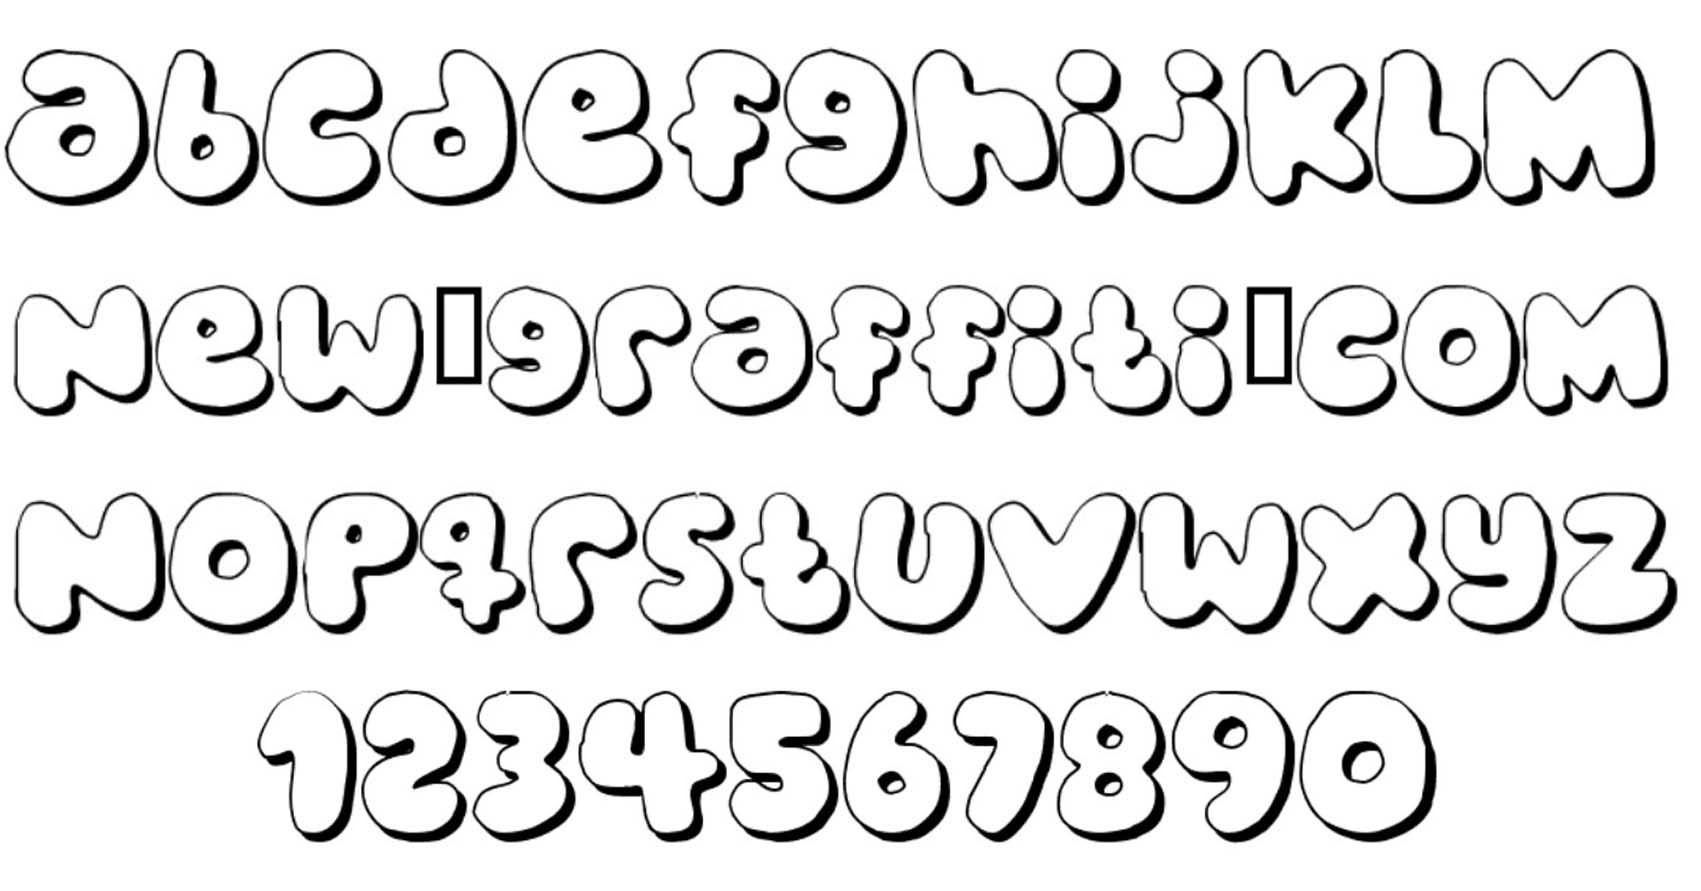 10 Cool Bubble Fonts Images Bubble Letters Alphabet Font Cool